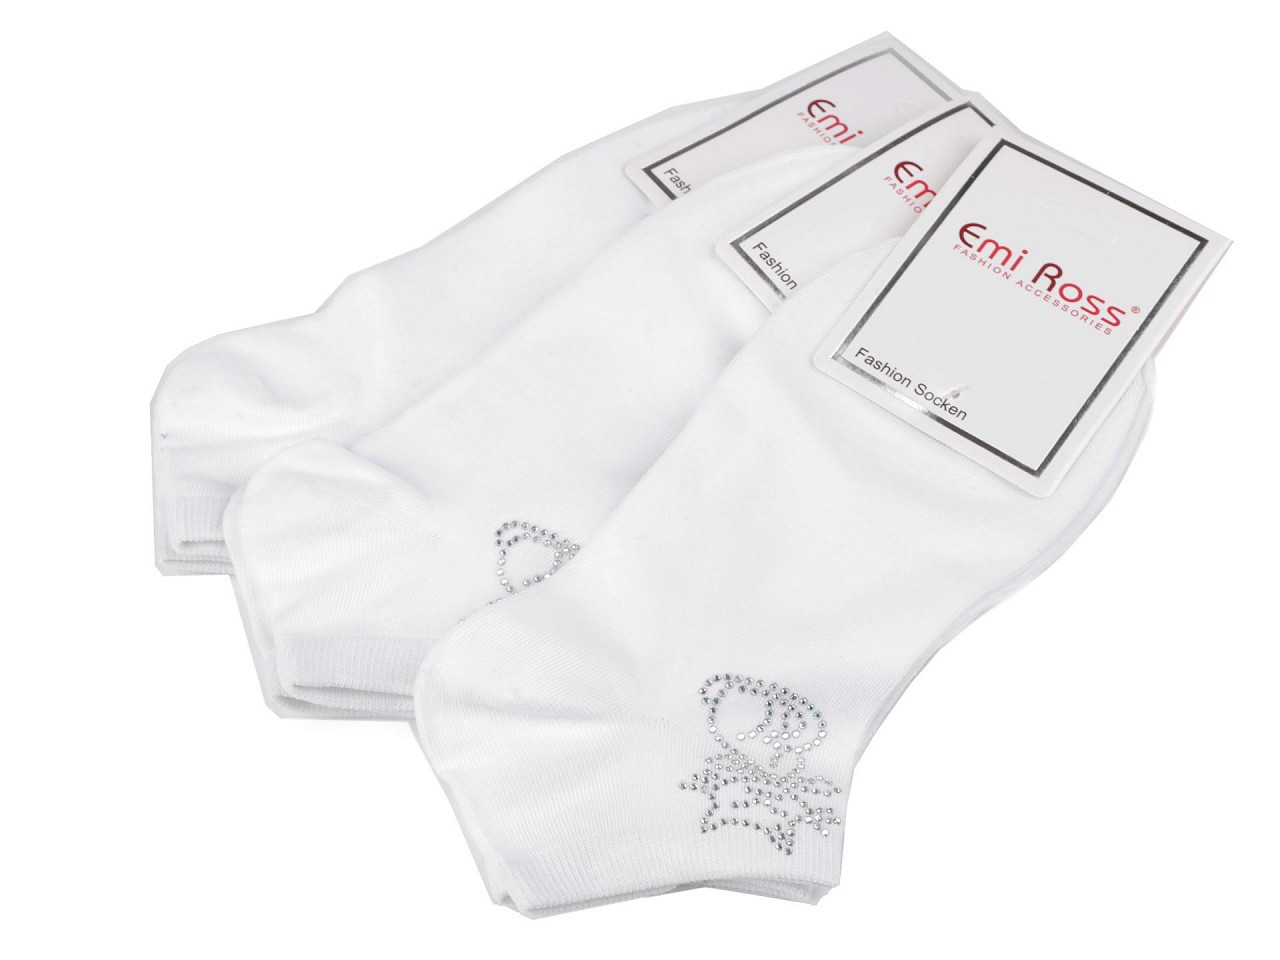 Dámské bavlněné ponožky kotníkové s kamínky Emi Ross, barva 45 (35-38) bílá